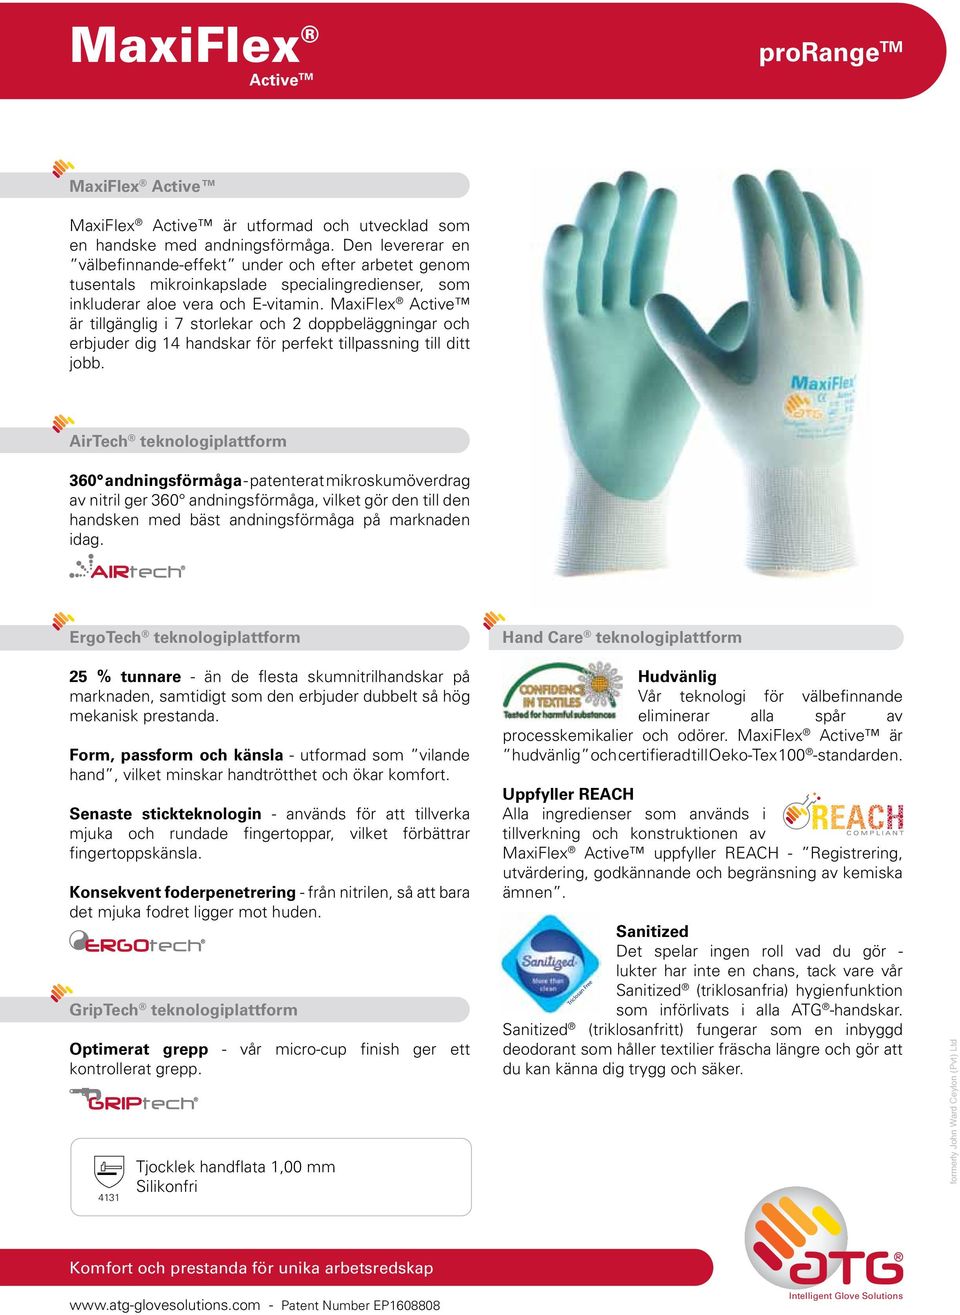 MaxiFlex Active är tillgänglig i 7 storlekar och 2 doppbeläggningar och erbjuder dig 14 handskar för perfekt tillpassning till ditt jobb.